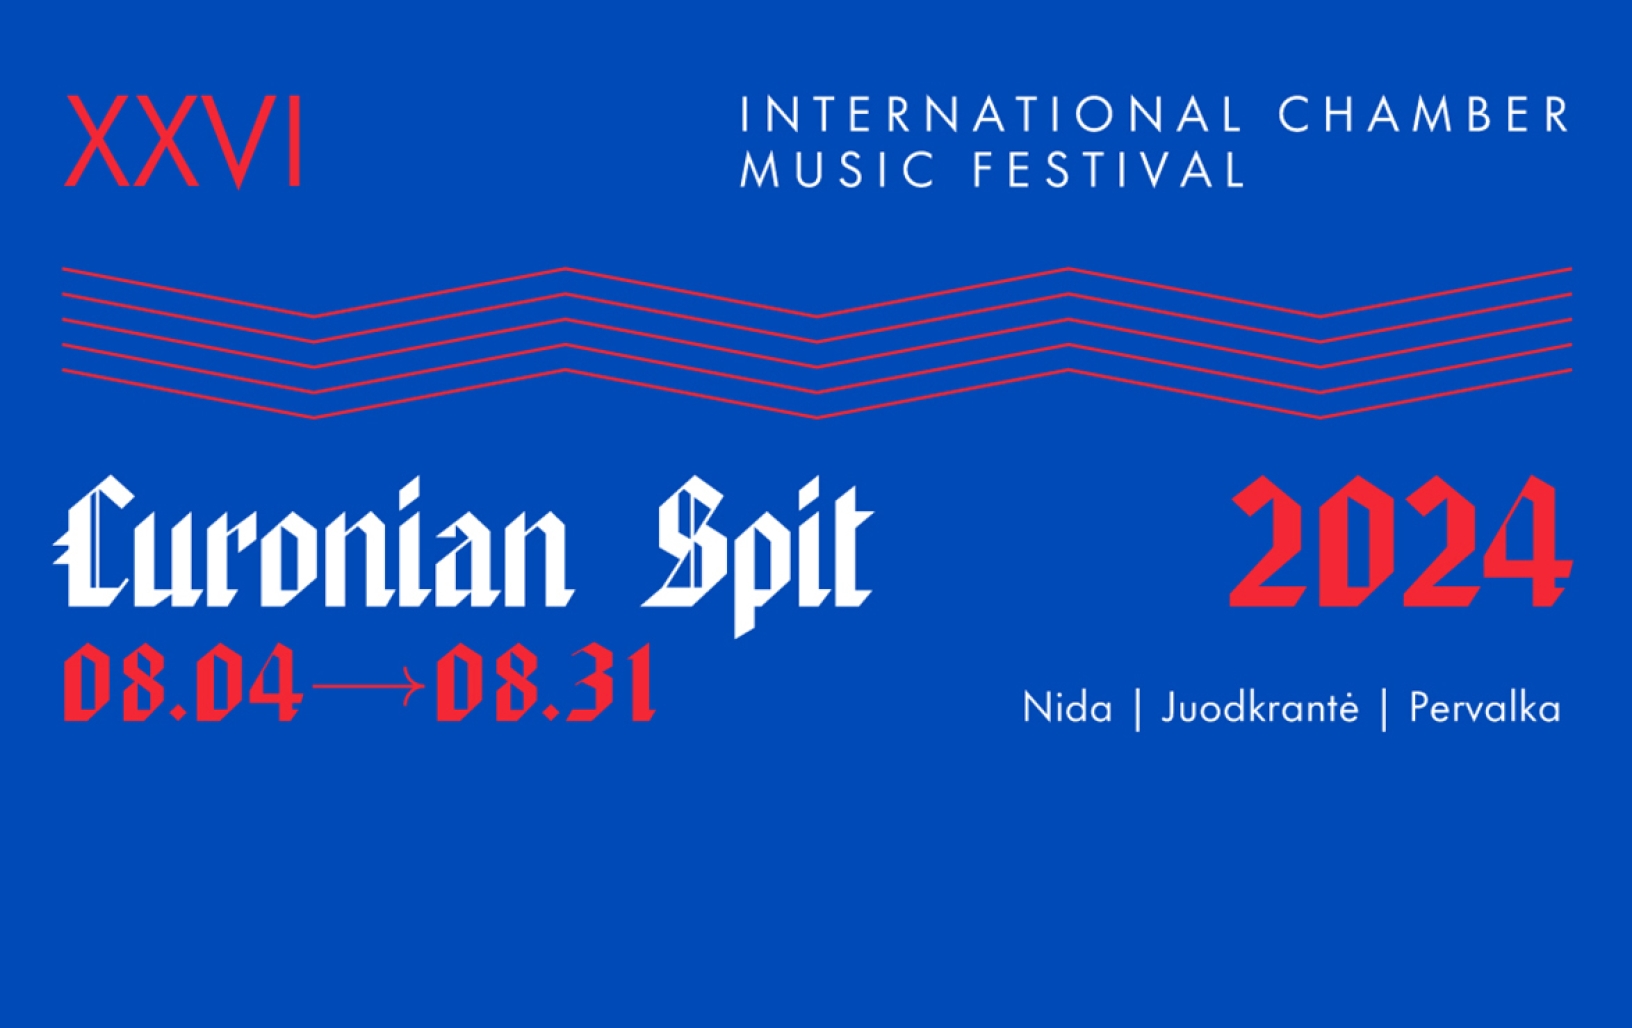 Curonian Spit Festival 2024